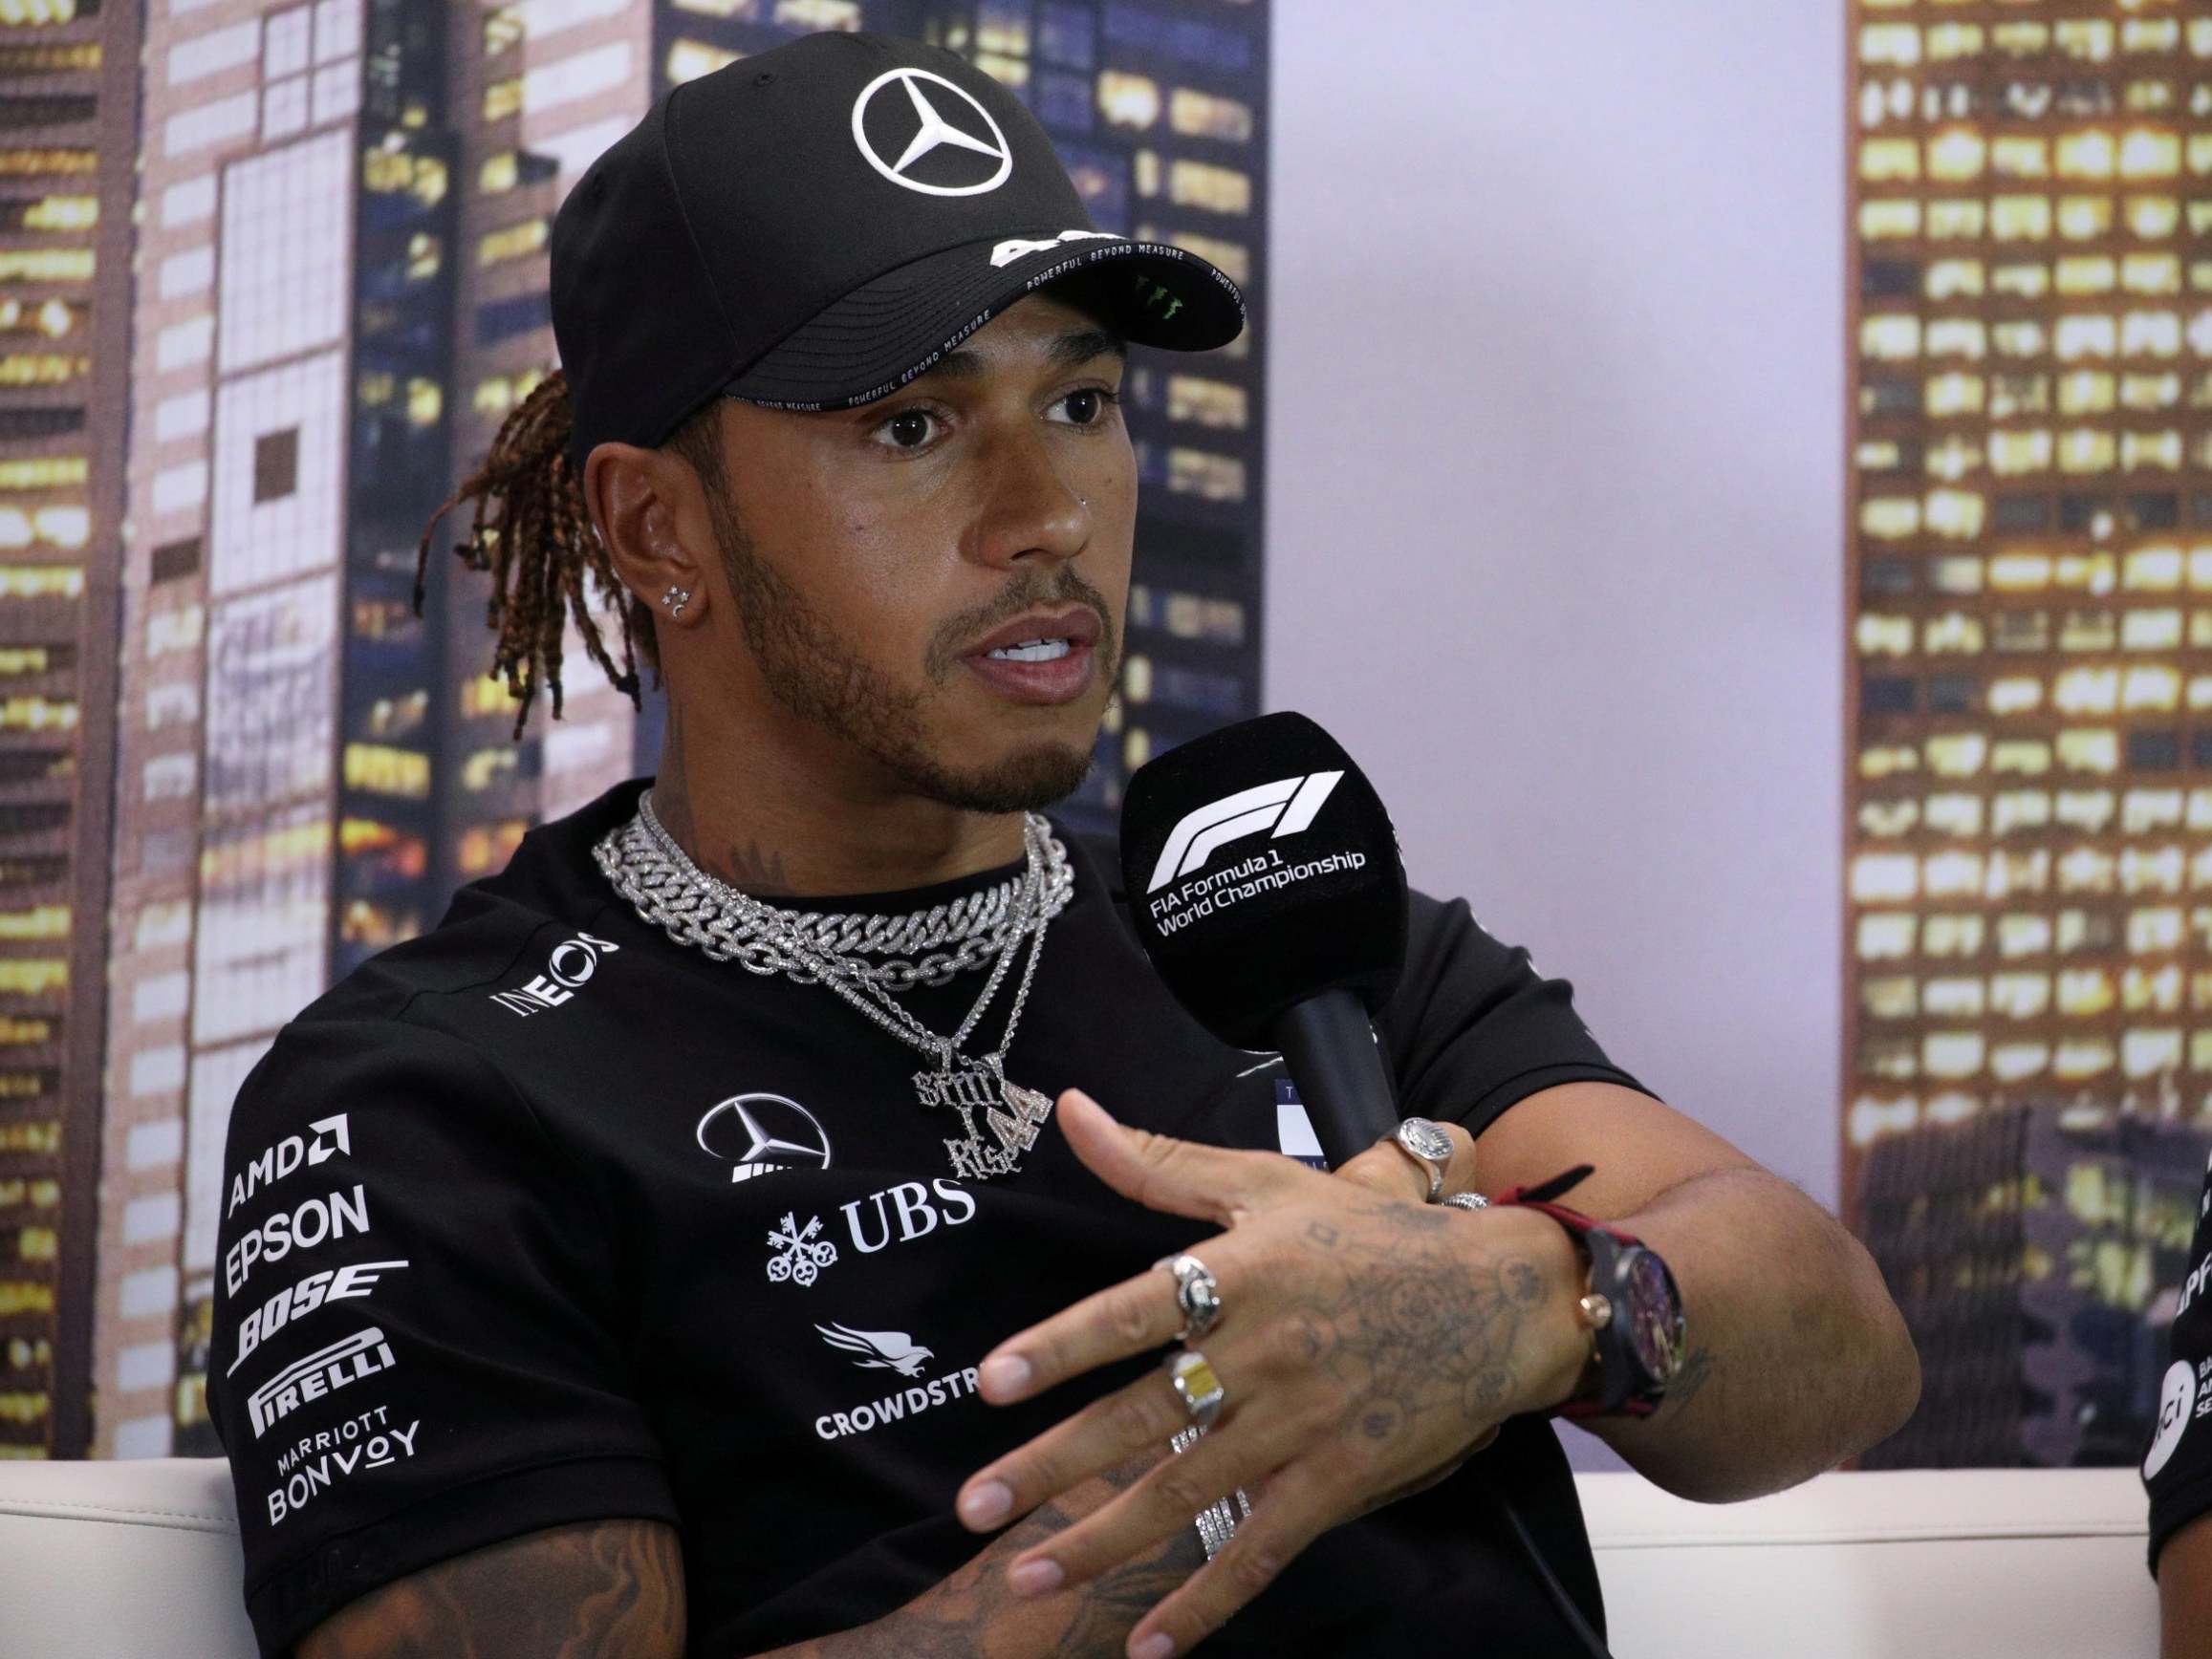 God is love” tattoo on Lewis Hamilton's left side